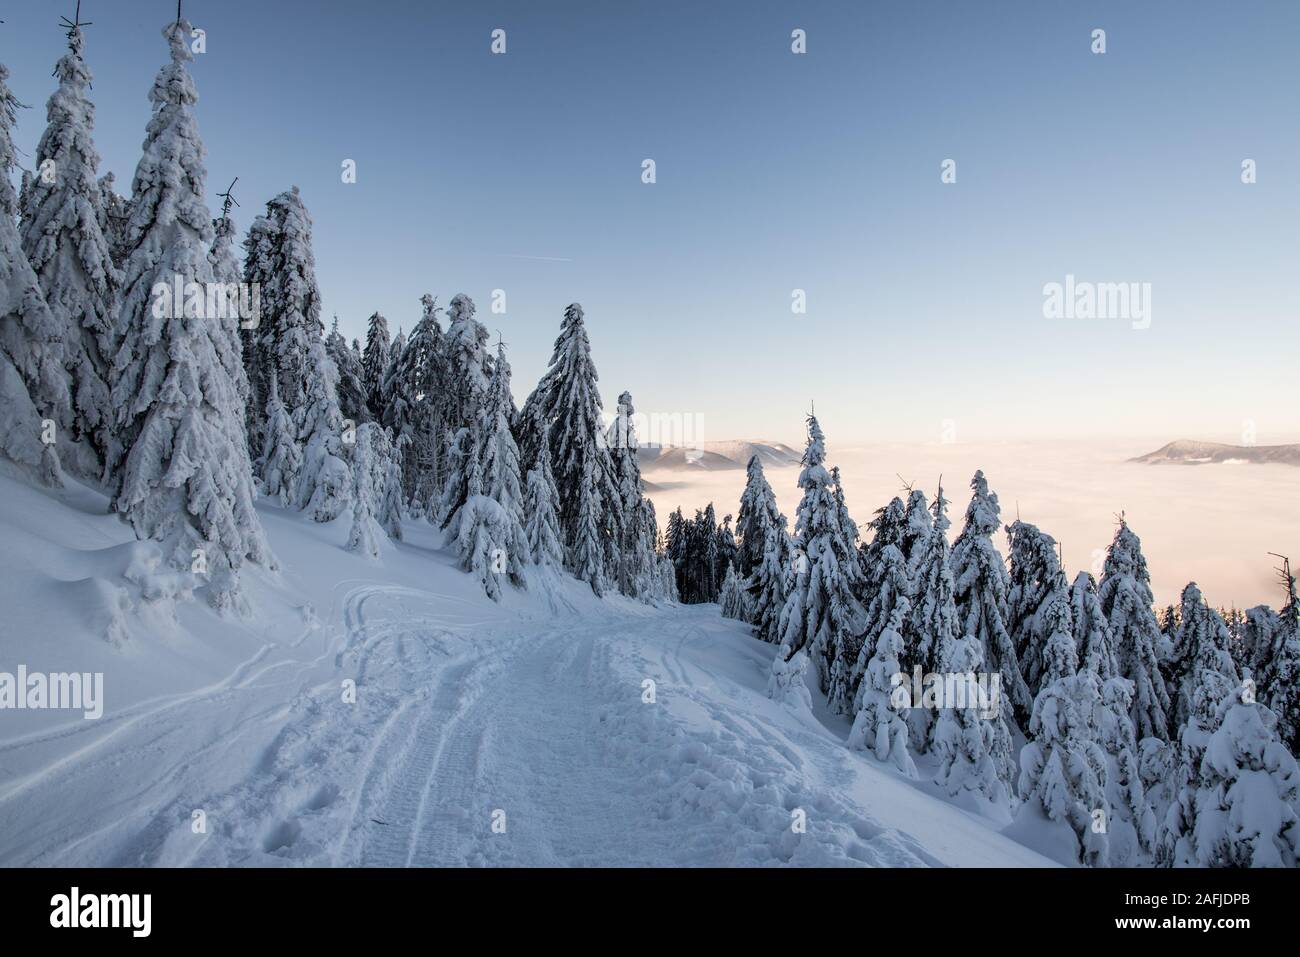 Sentier de randonnée couverts de neige gelée avec des arbres autour des collines et sur l'arrière-plan ci-dessous Lysa hora hill en hiver Moravskoslezske Beskydy montagnes en Cz Banque D'Images